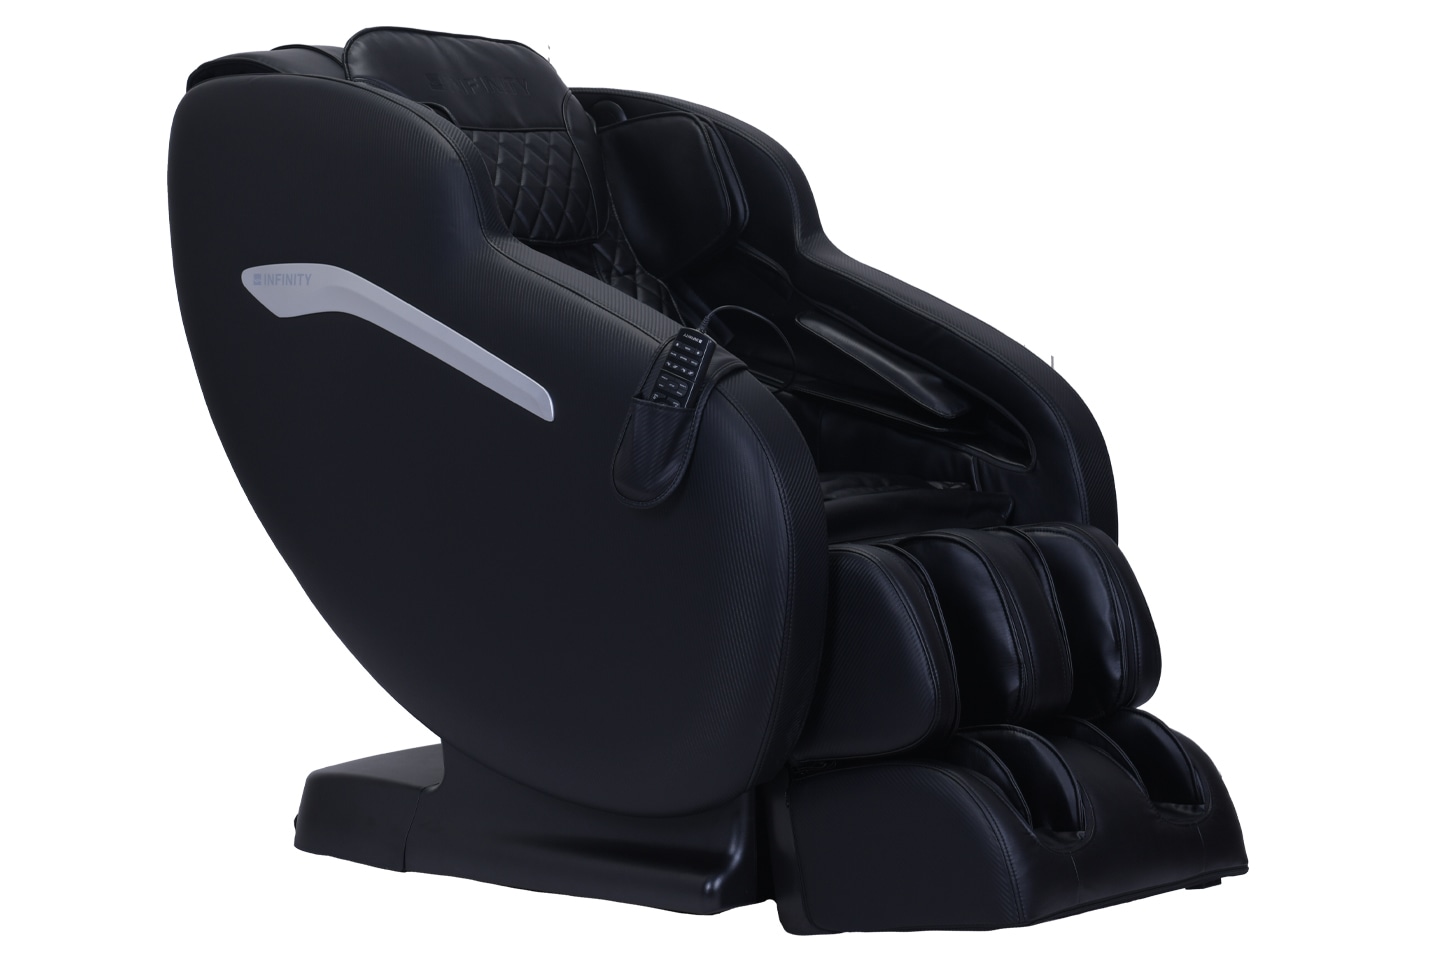 Aura™ Massage Chair